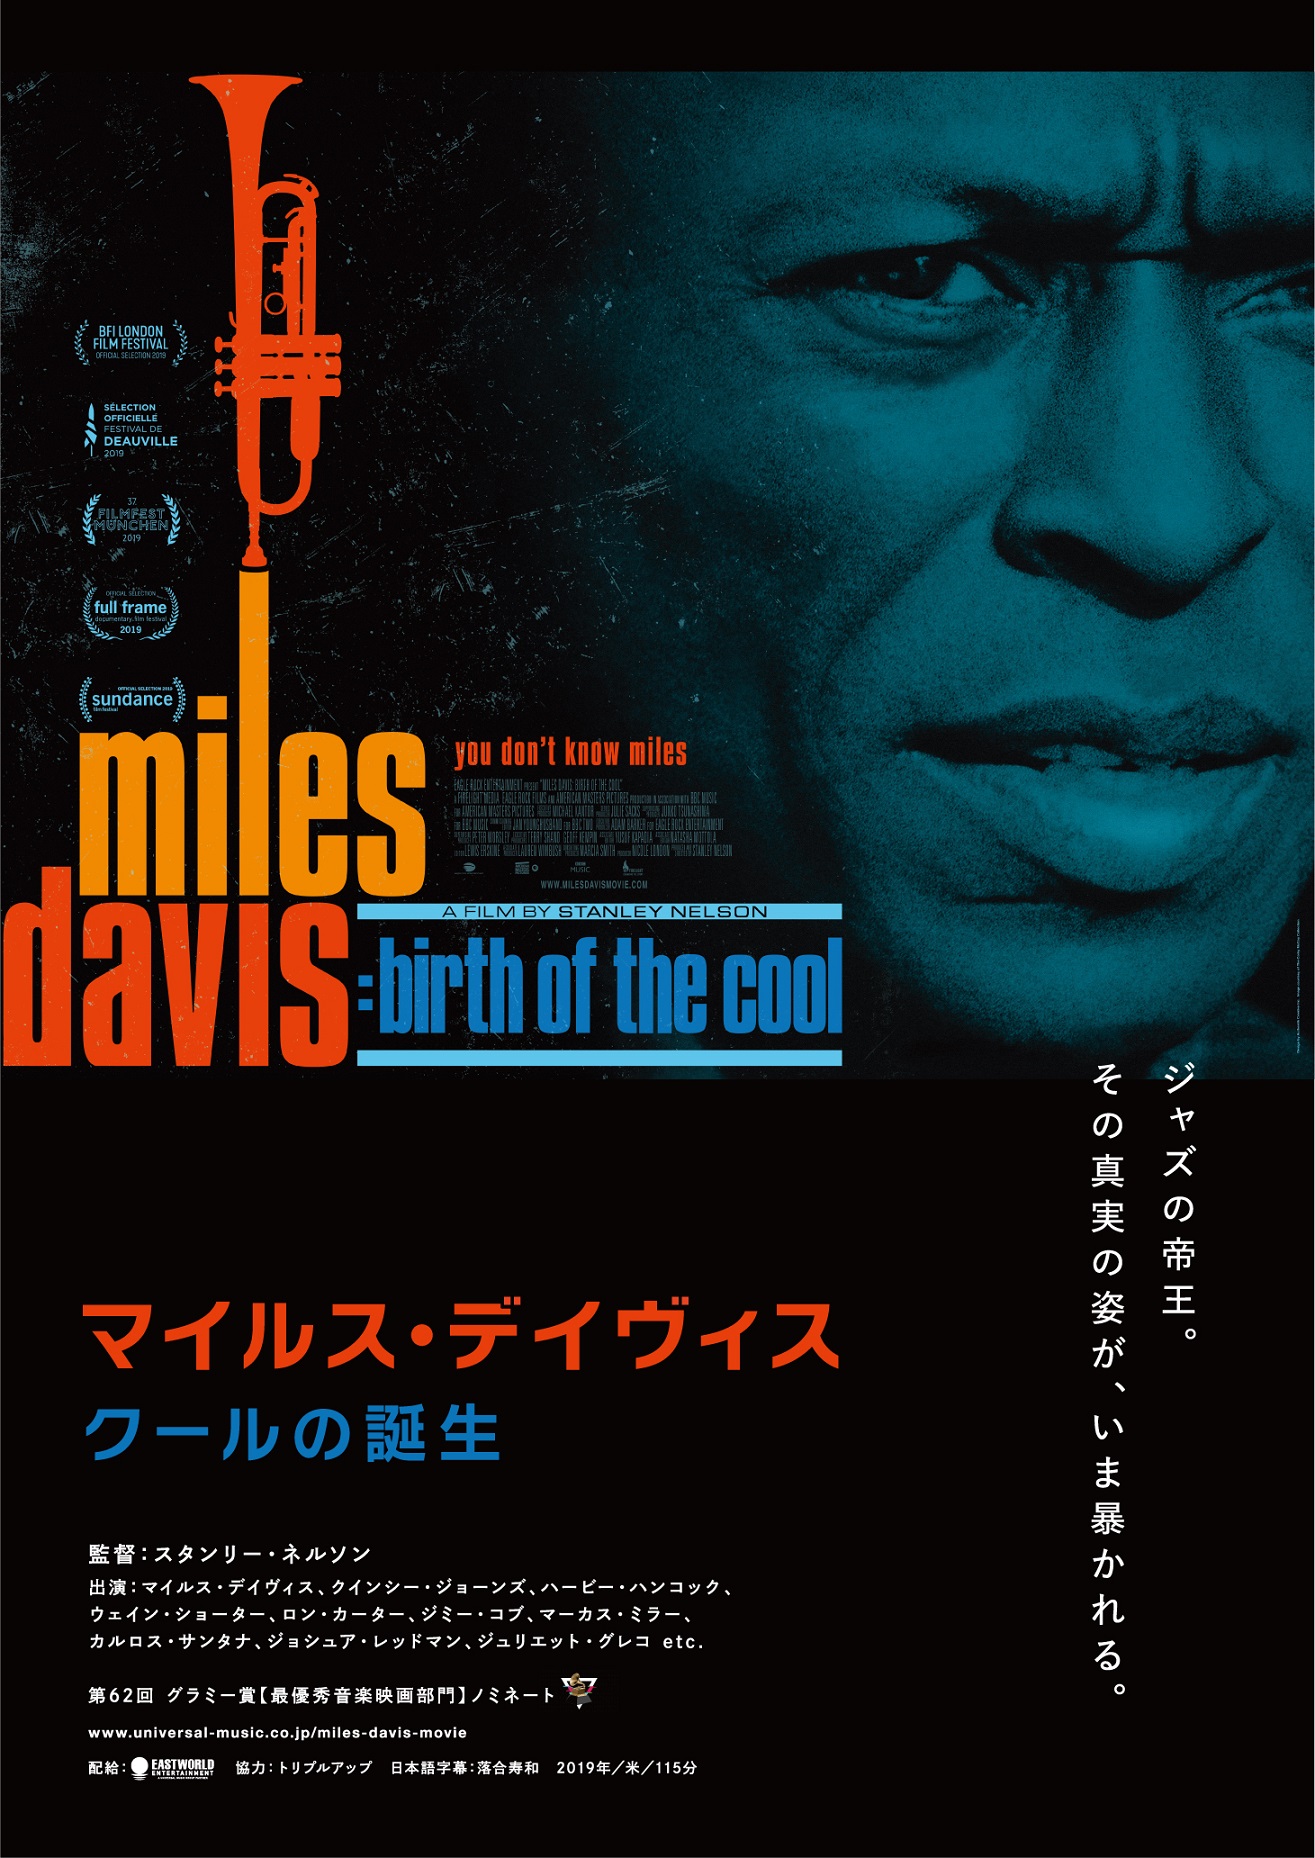 マイルス デイヴィスを描いたドキュメンタリー映画 マイルス デイヴィス クールの誕生 9月4日 日本公開 ユニバーサル ミュージック合同会社のプレスリリース